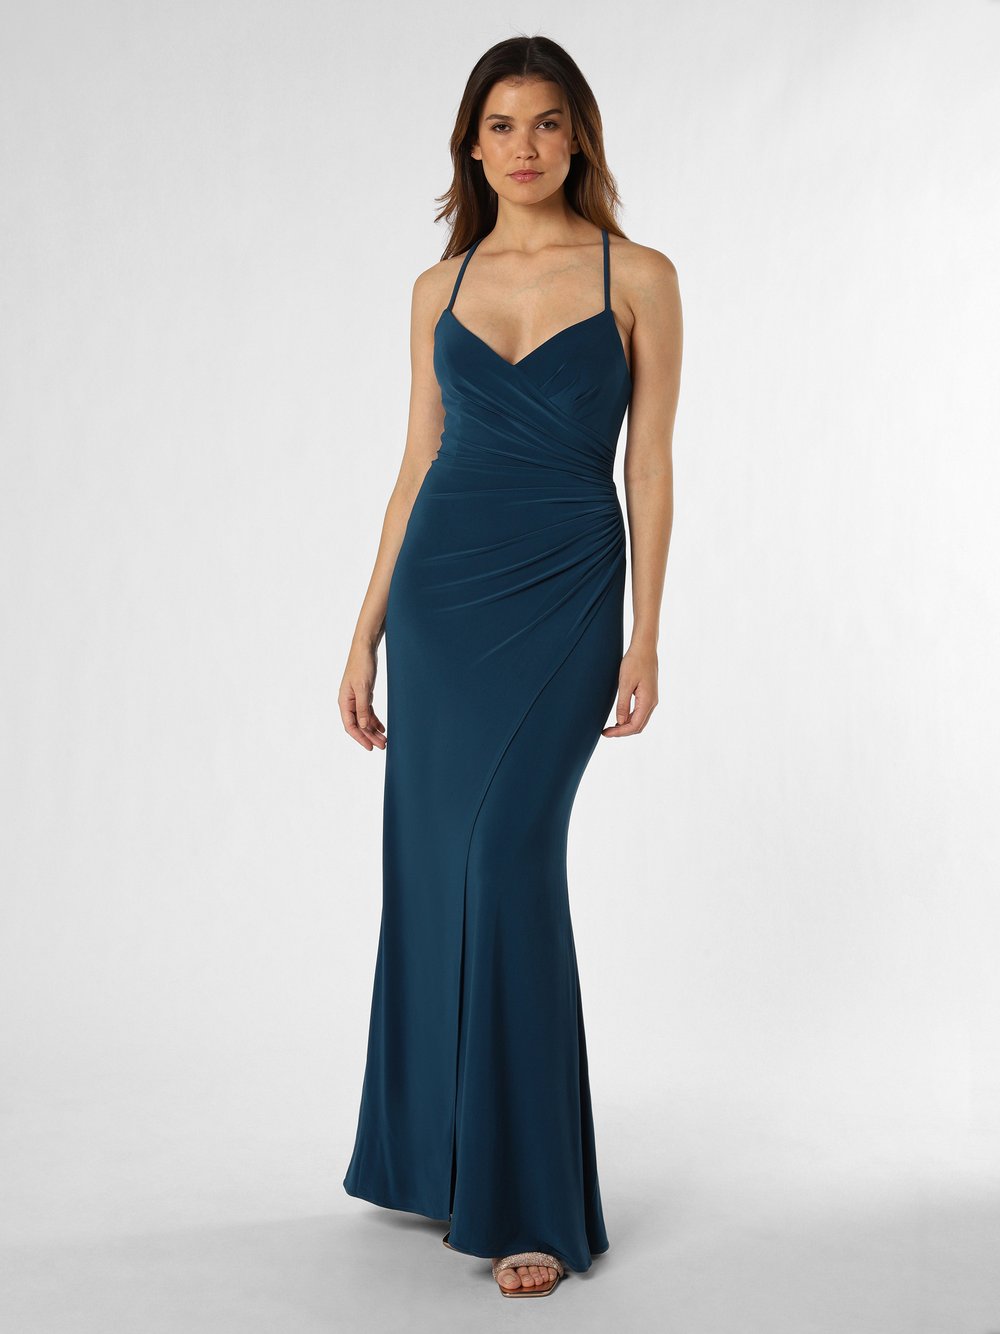 Luxuar Fashion Damska sukienka wieczorowa Kobiety niebieski jednolity, 40